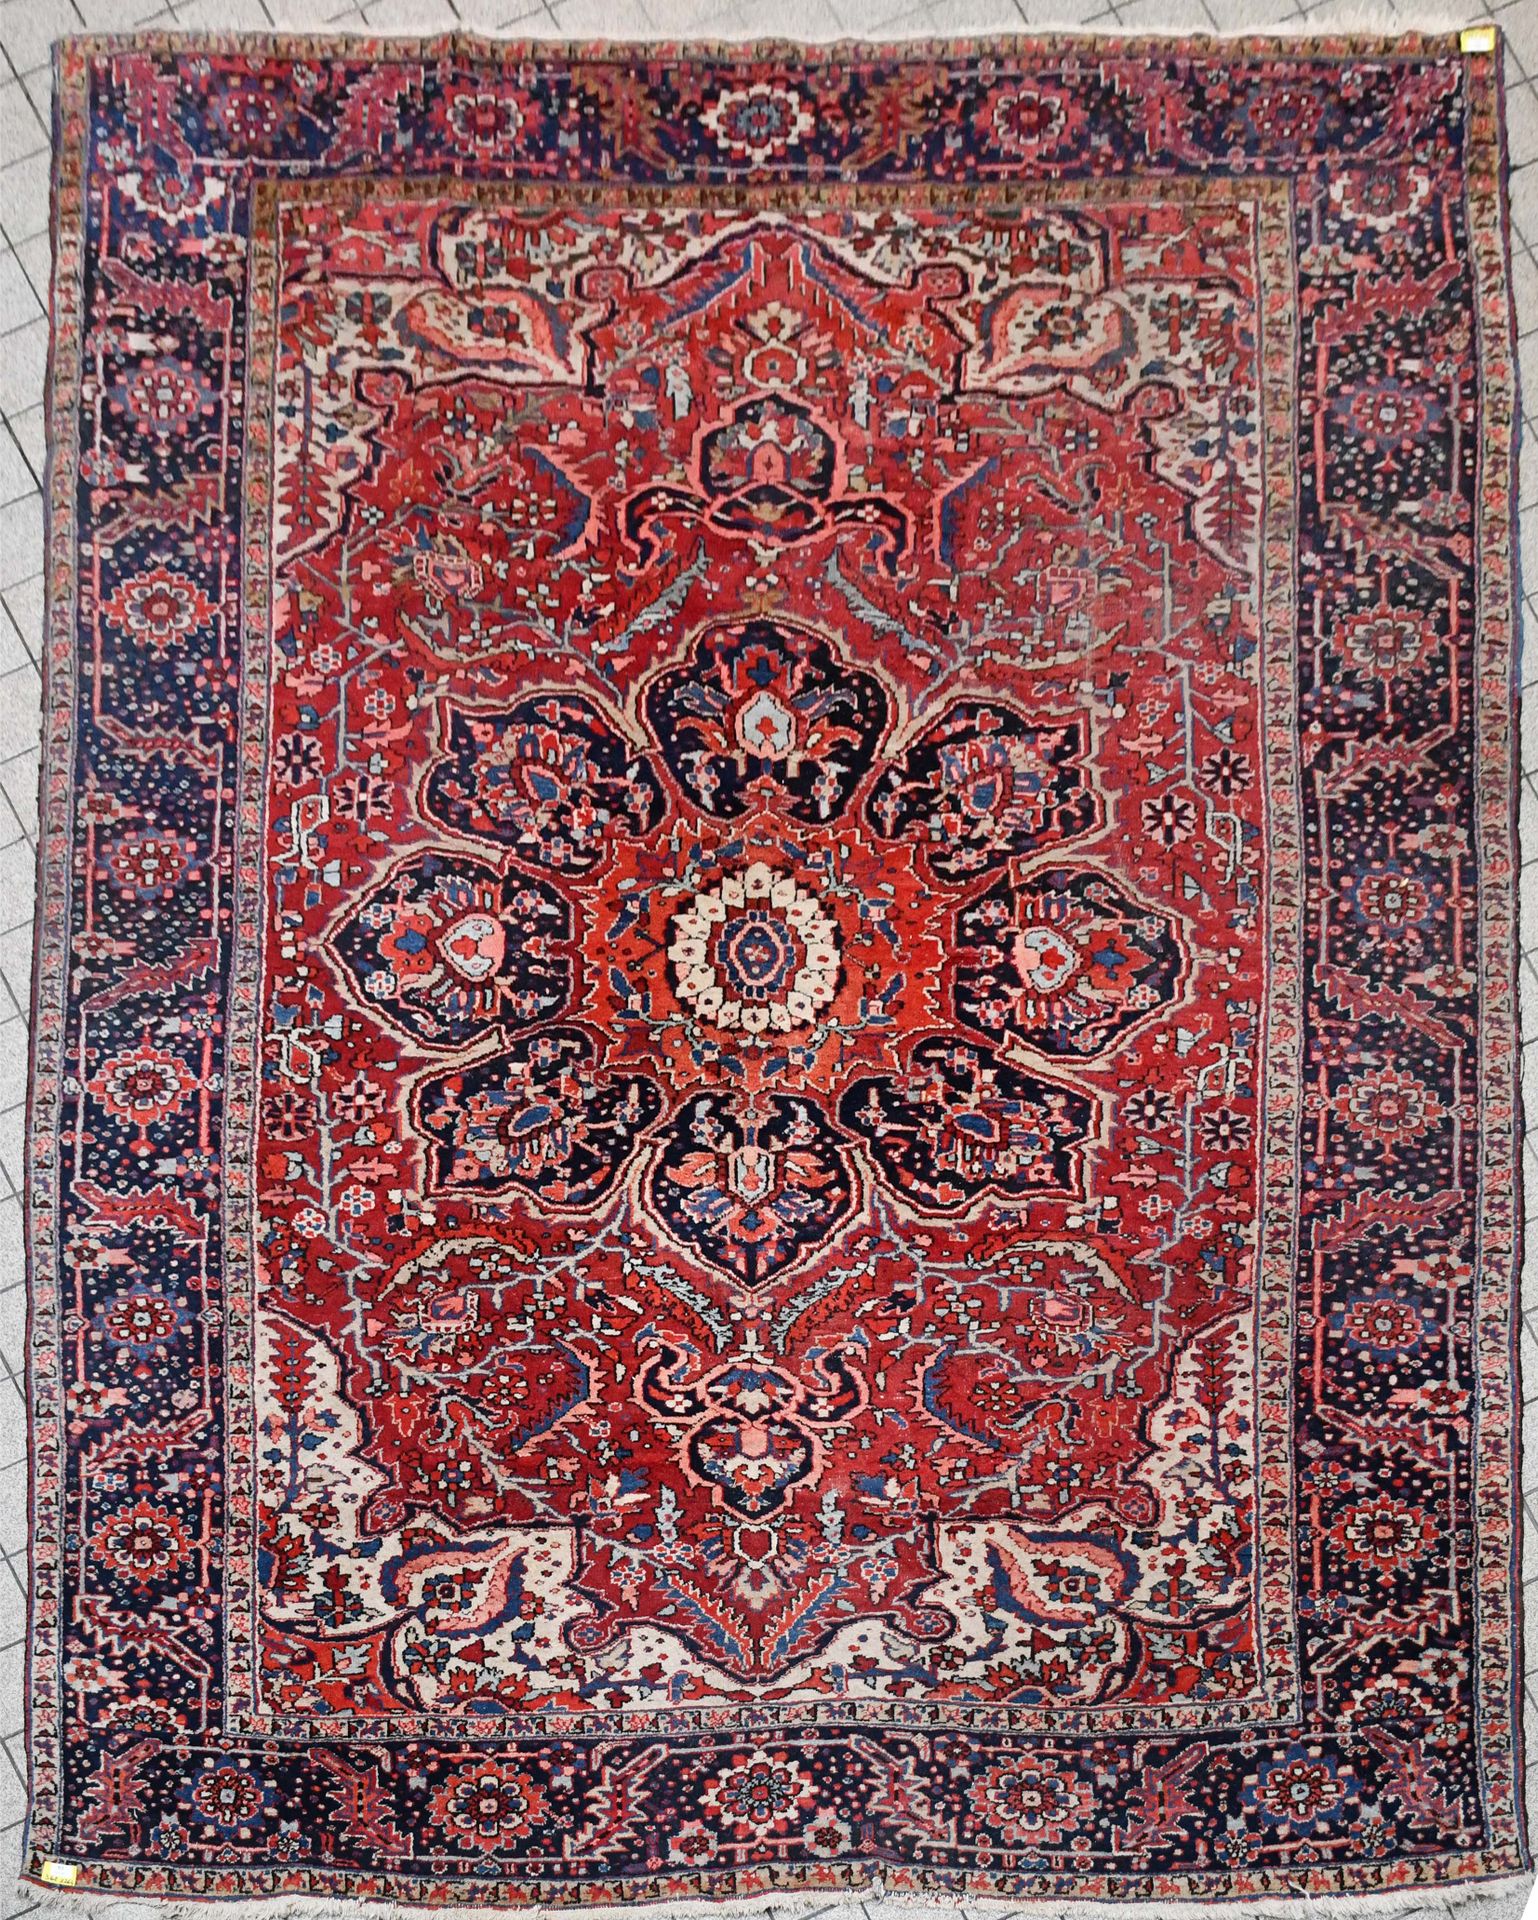 Null Tappeto

Vecchio tappeto orientale Heriz.

Dimensioni: 362 cm x 264 cm.